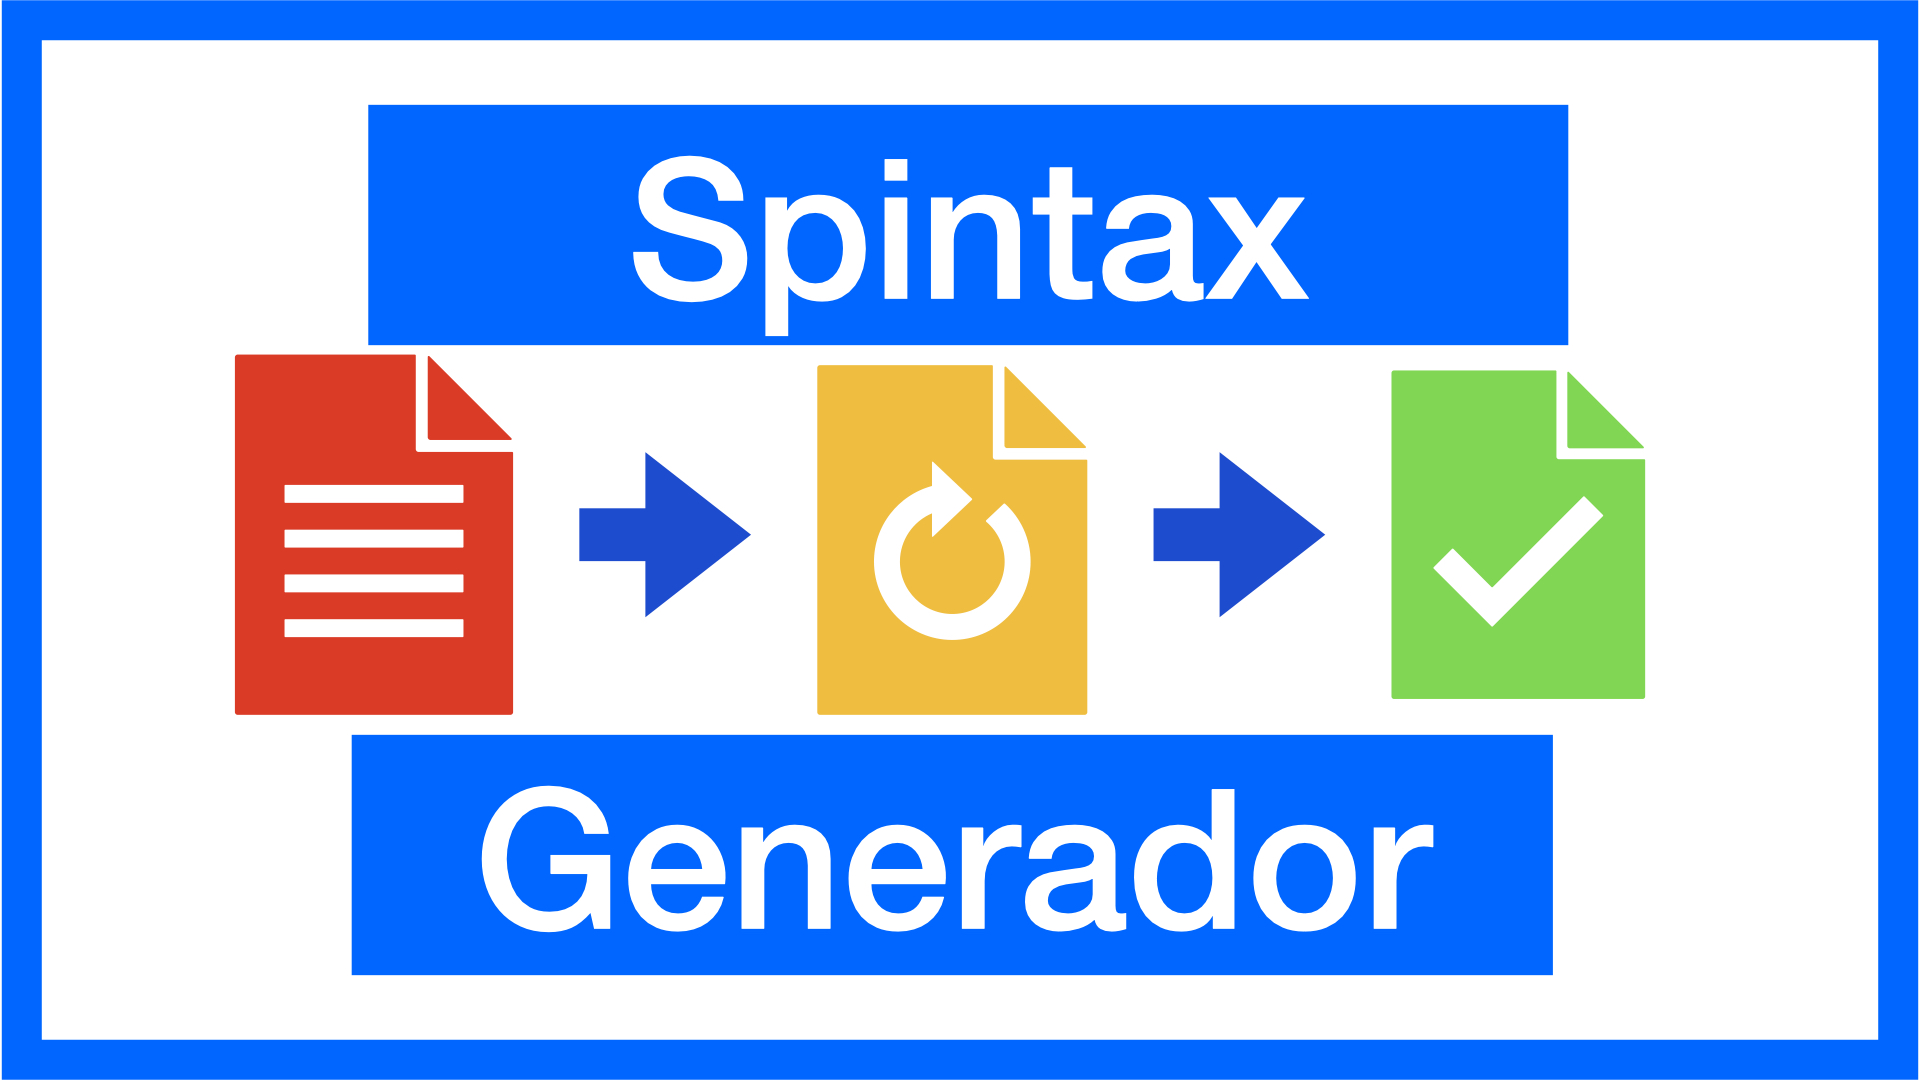 Generador de Spintax online